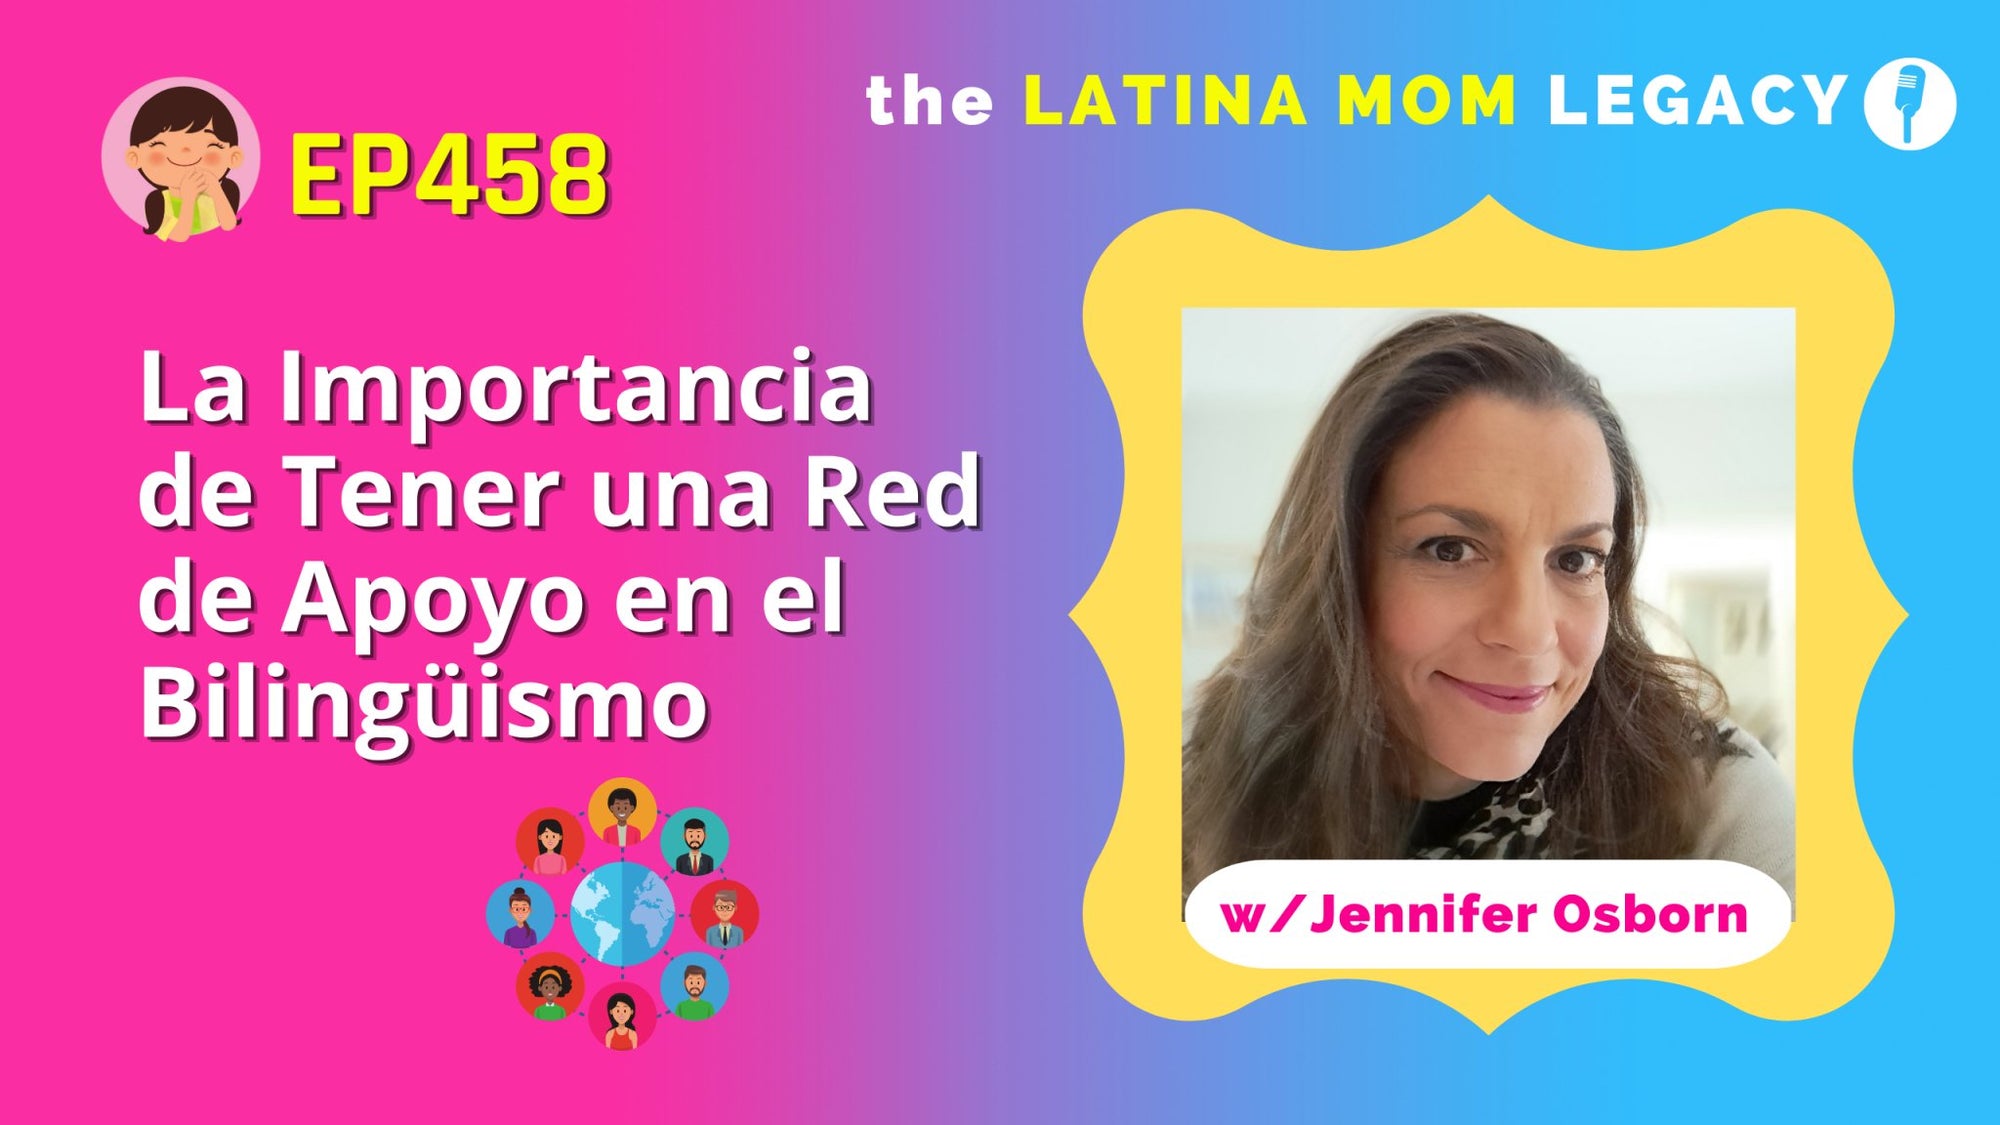 EP 458 Jennifer Osborn La Importancia de Tener Una Red de Apoyo en el Bilinguismo - Mi LegaSi